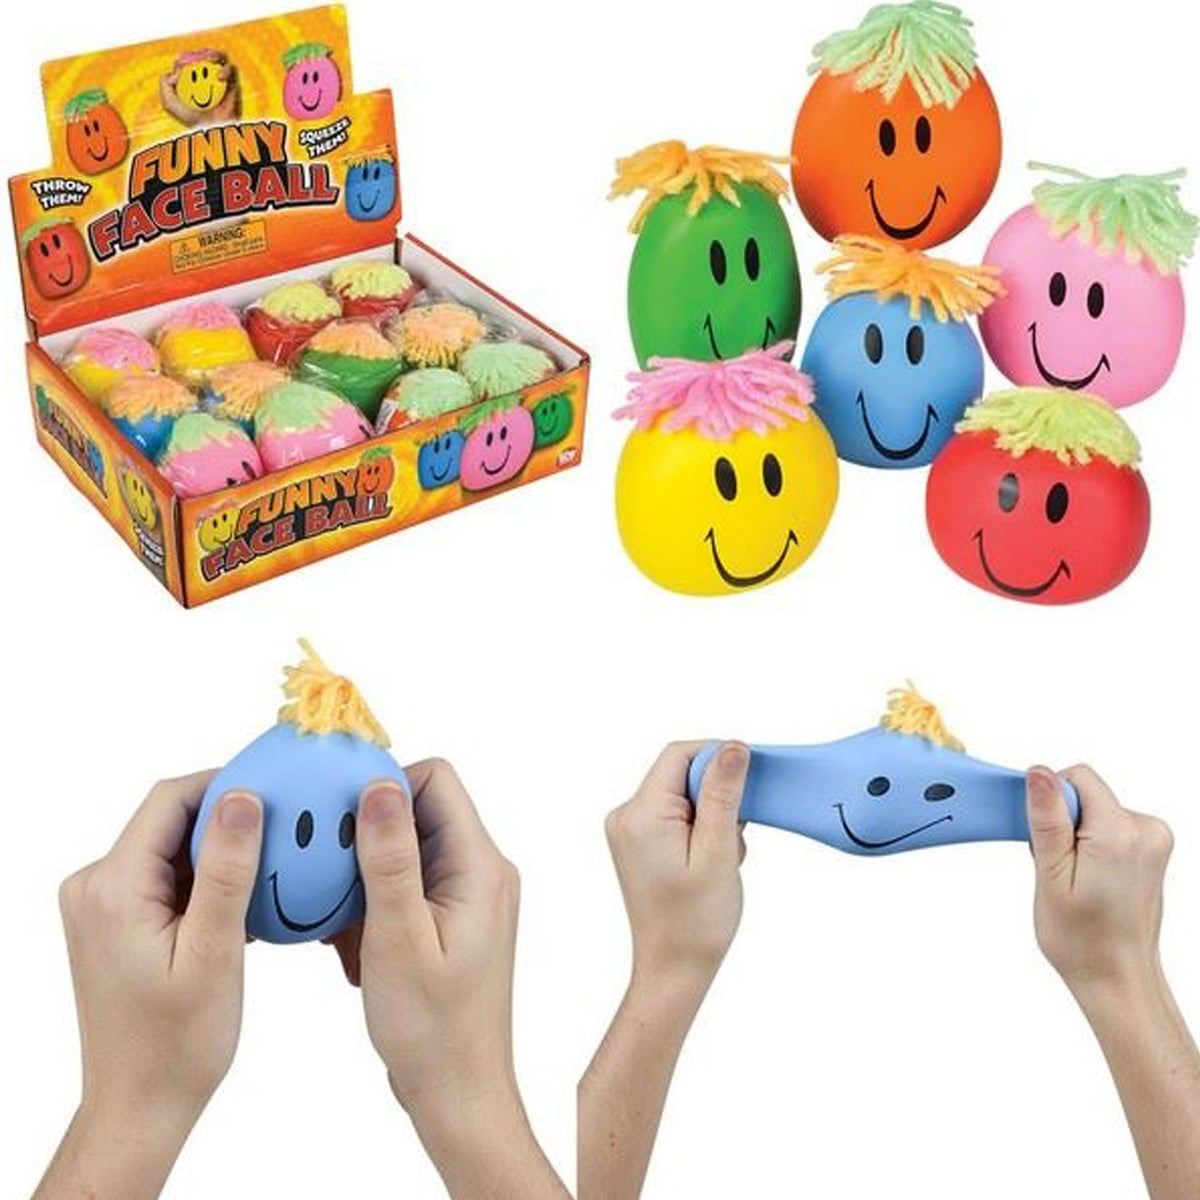 Smiley Stretch Ball kids toys (1 Dozen=$19.99)